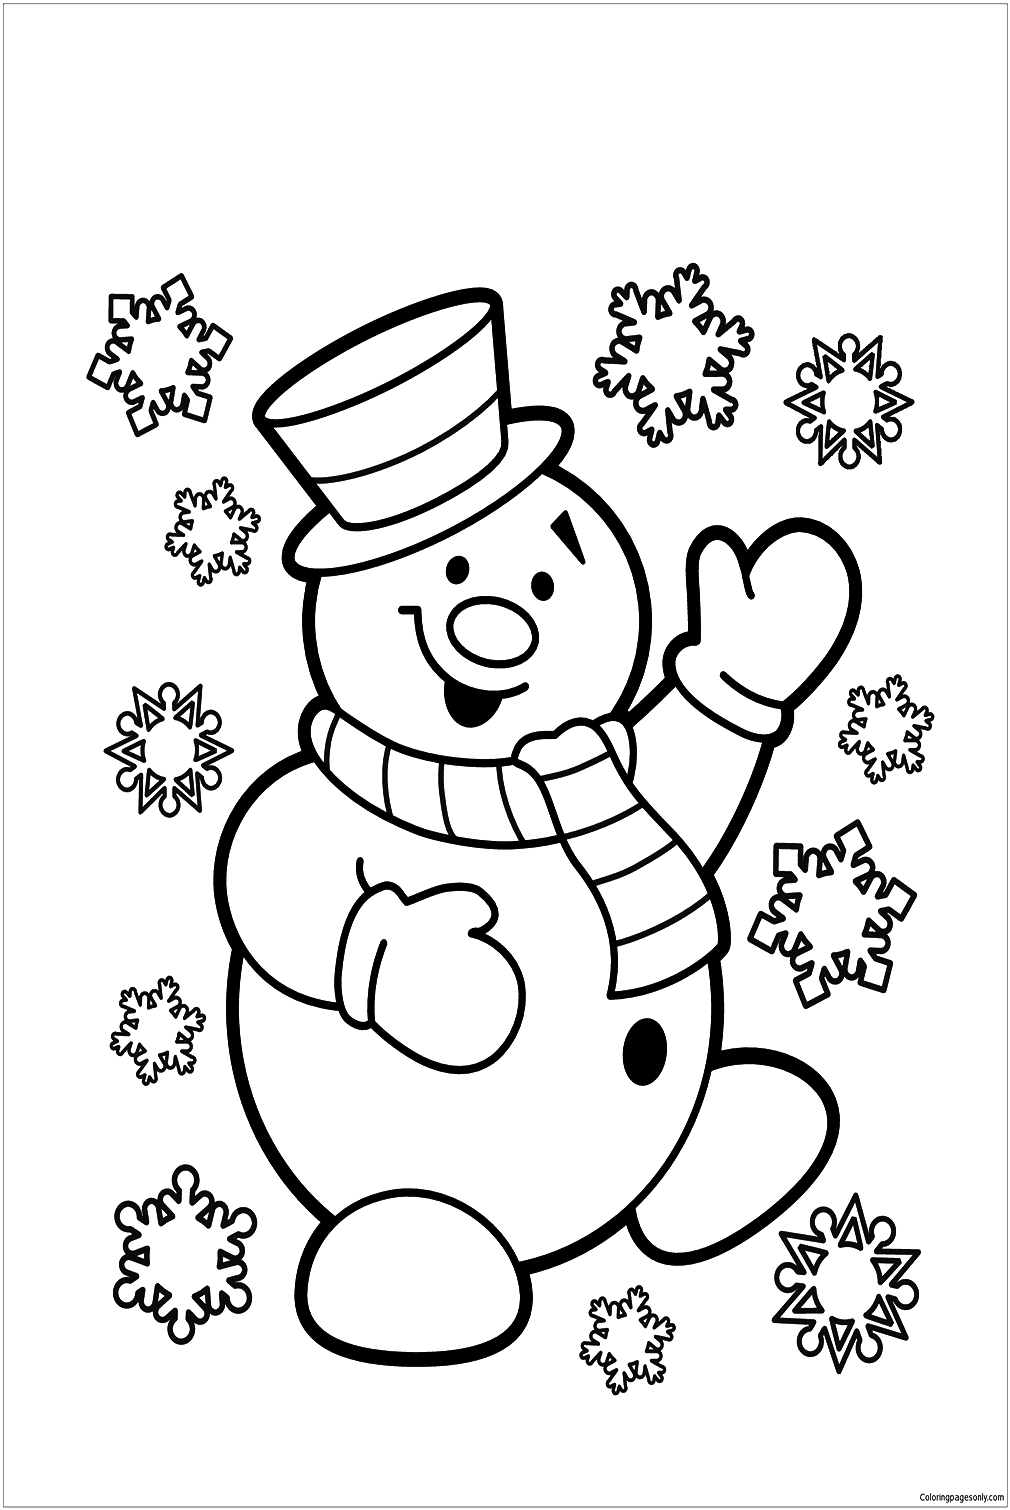 رجل الثلج يرقص من رجل الثلج